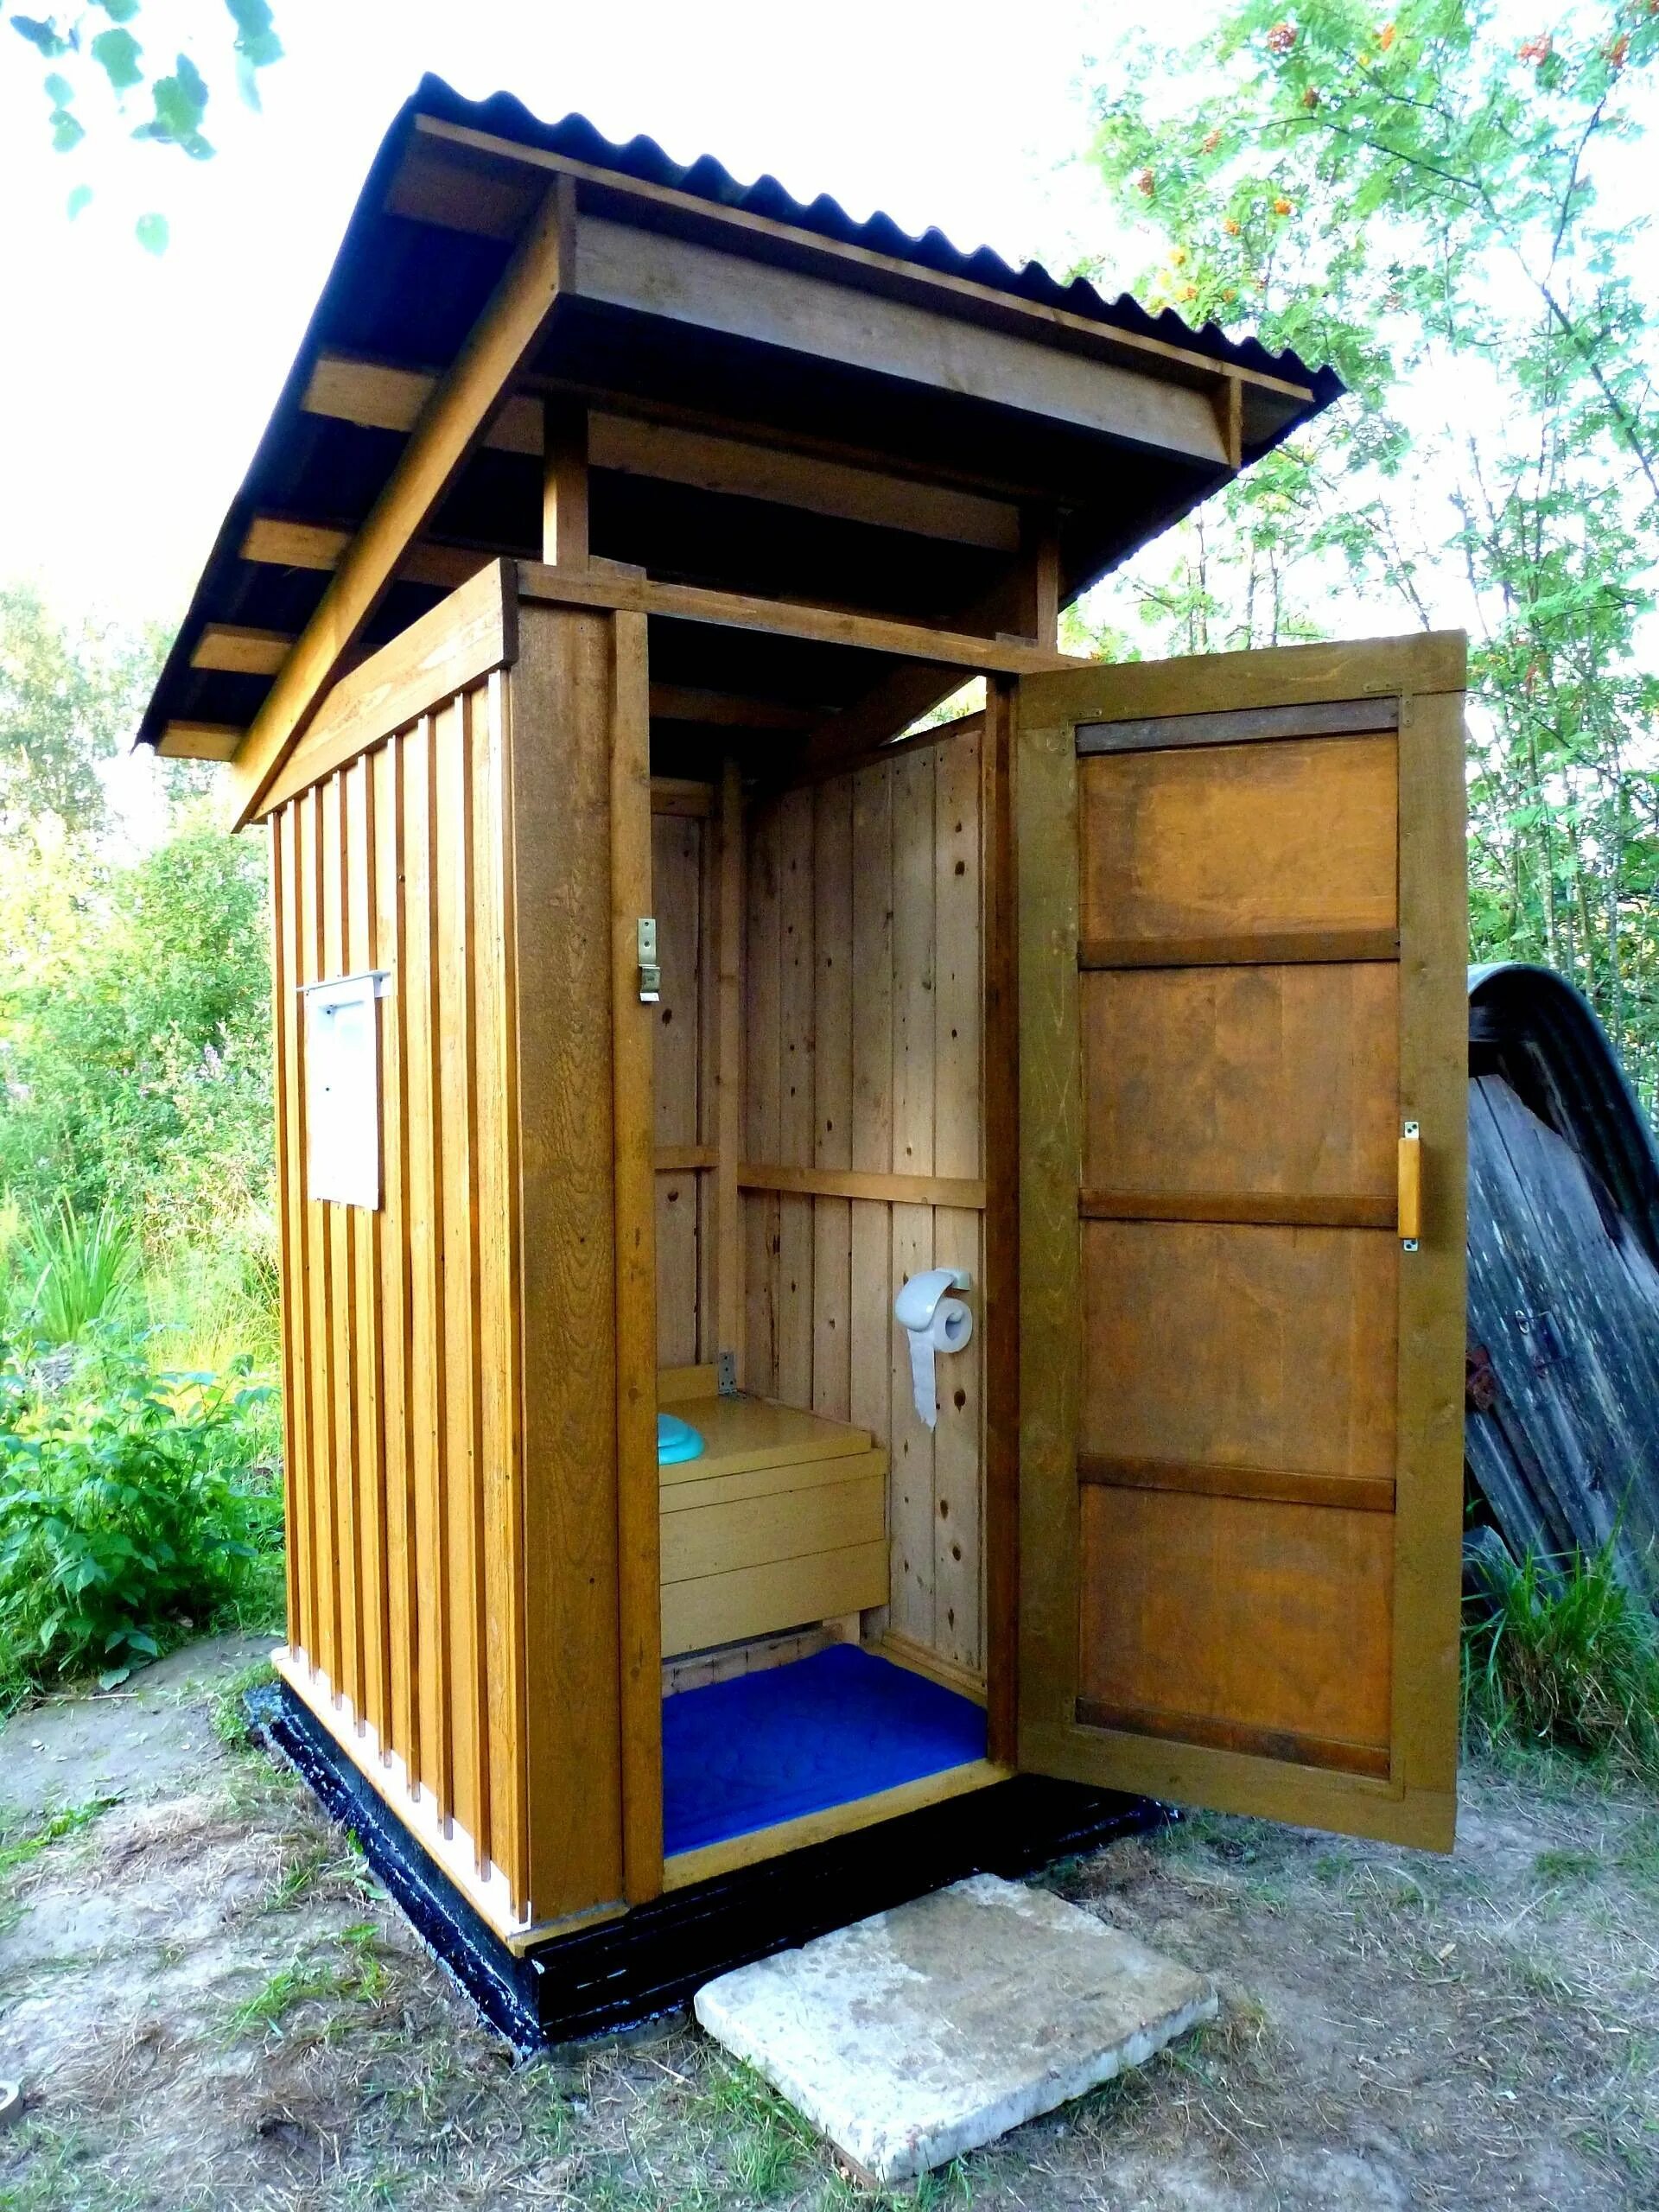 Дачный пудр клозет. Туалет пудр клозет. Туалет домик для дачи. Красивый туалет на даче. Как самой сделать туалет на даче